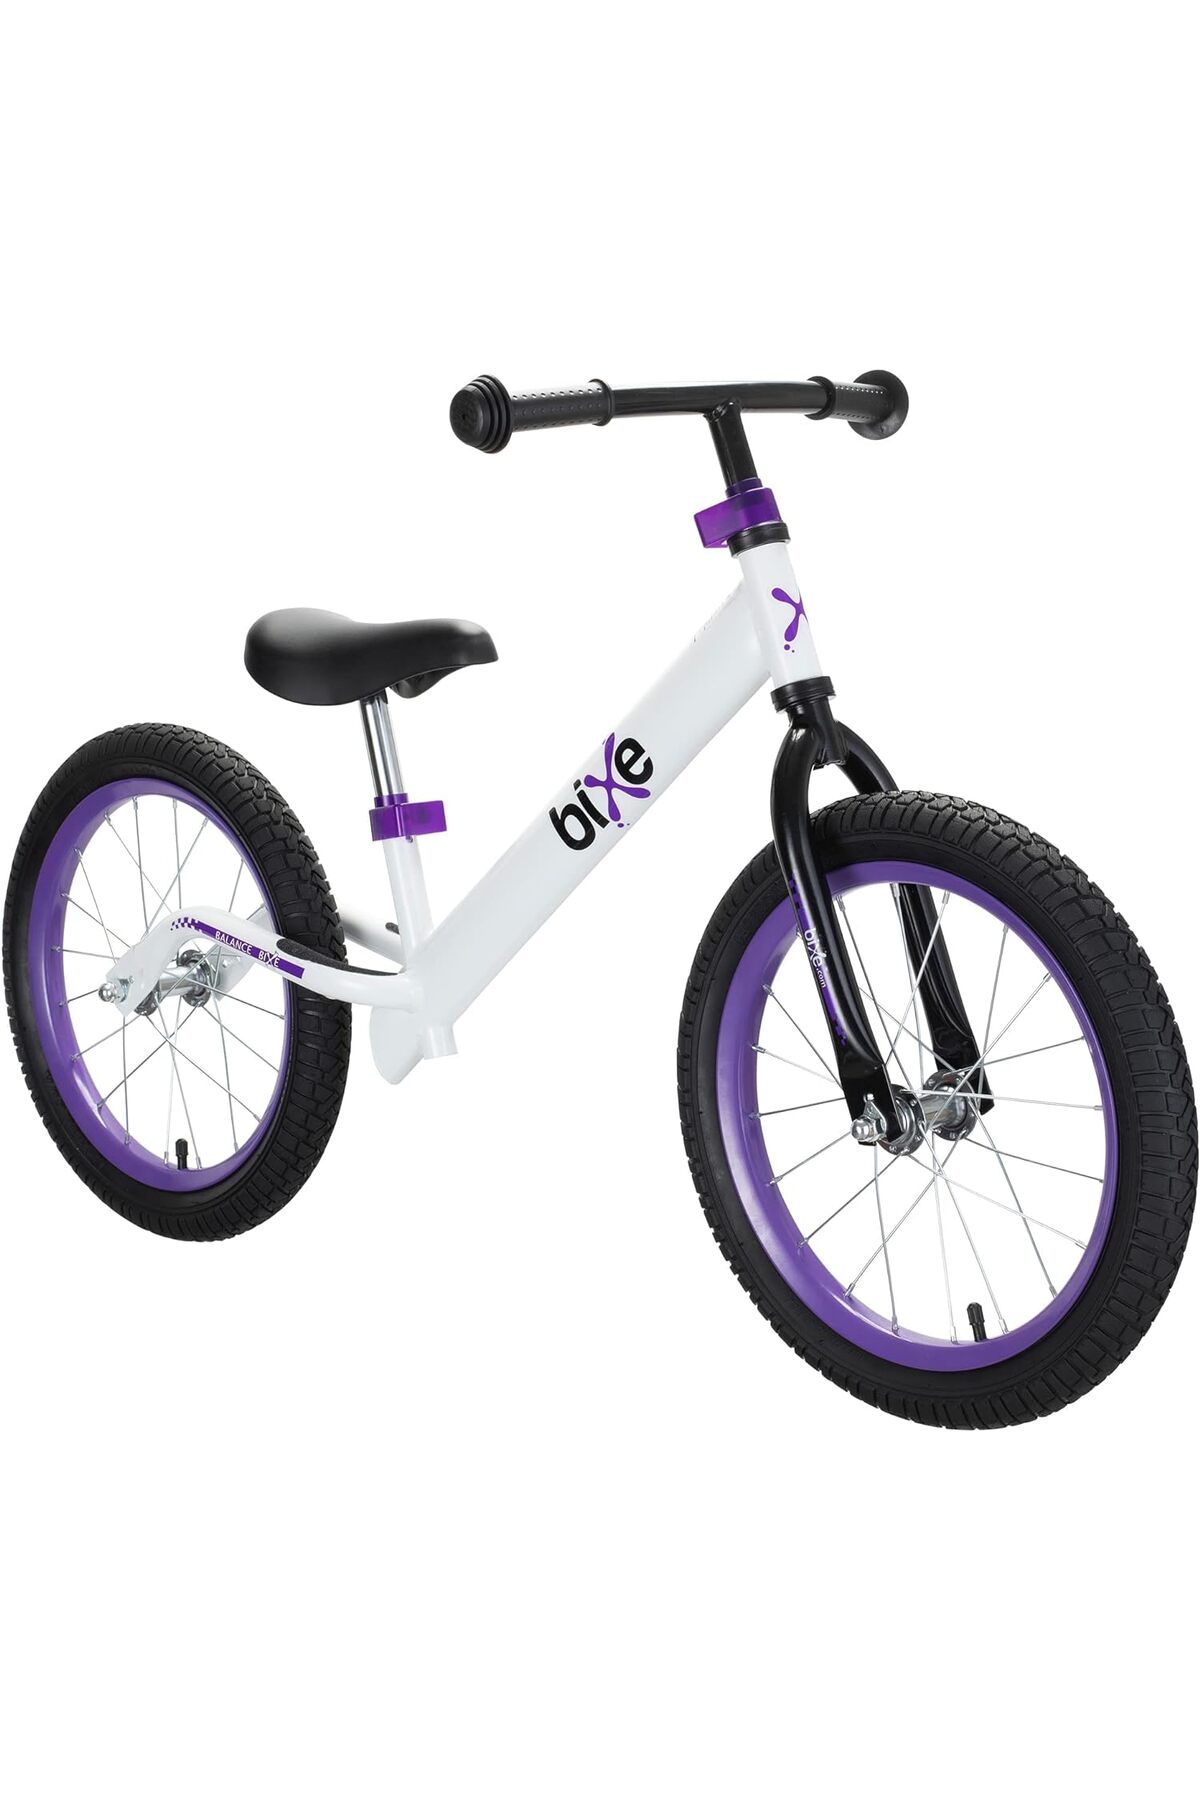 bixell Denge Bisikleti, Büyük Çocuklar için, Pedalsız Spor Eğitim Bisikleti, 16 inç Tekerlek